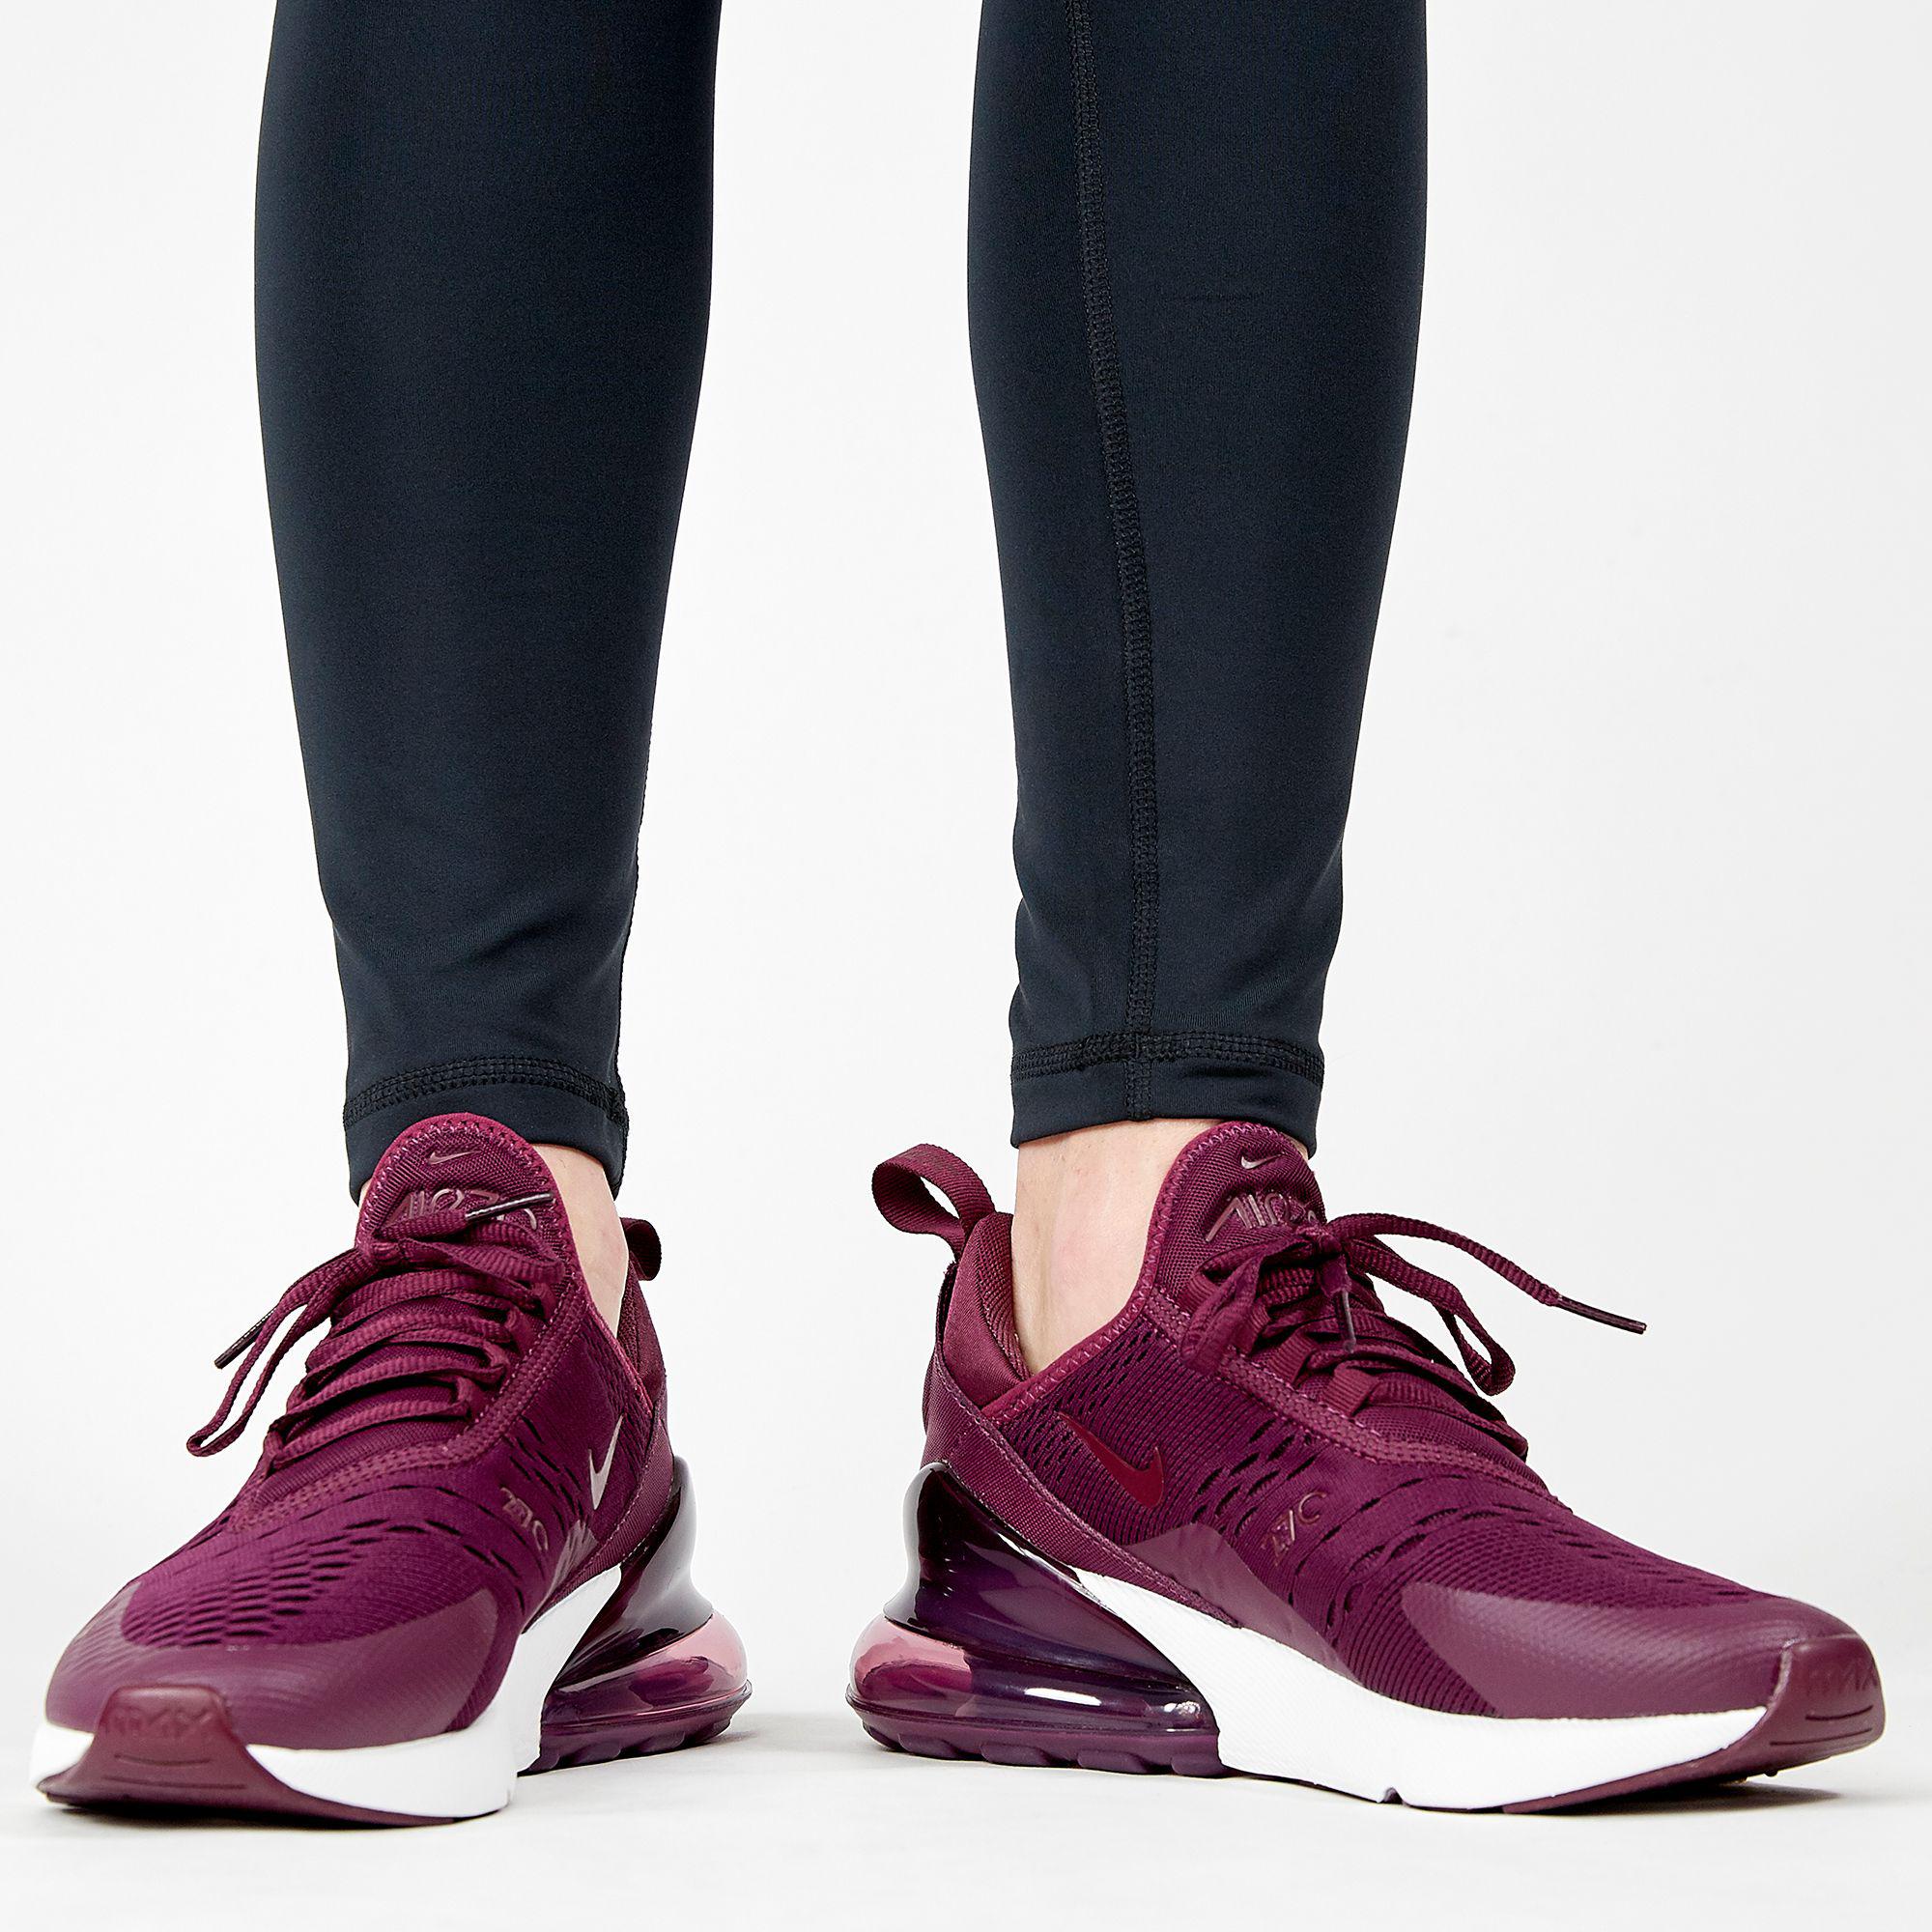 فريزر هايسنس Nike Rubber Air Max 270 Shoes in Burgundy (Purple) | Lyst فريزر هايسنس